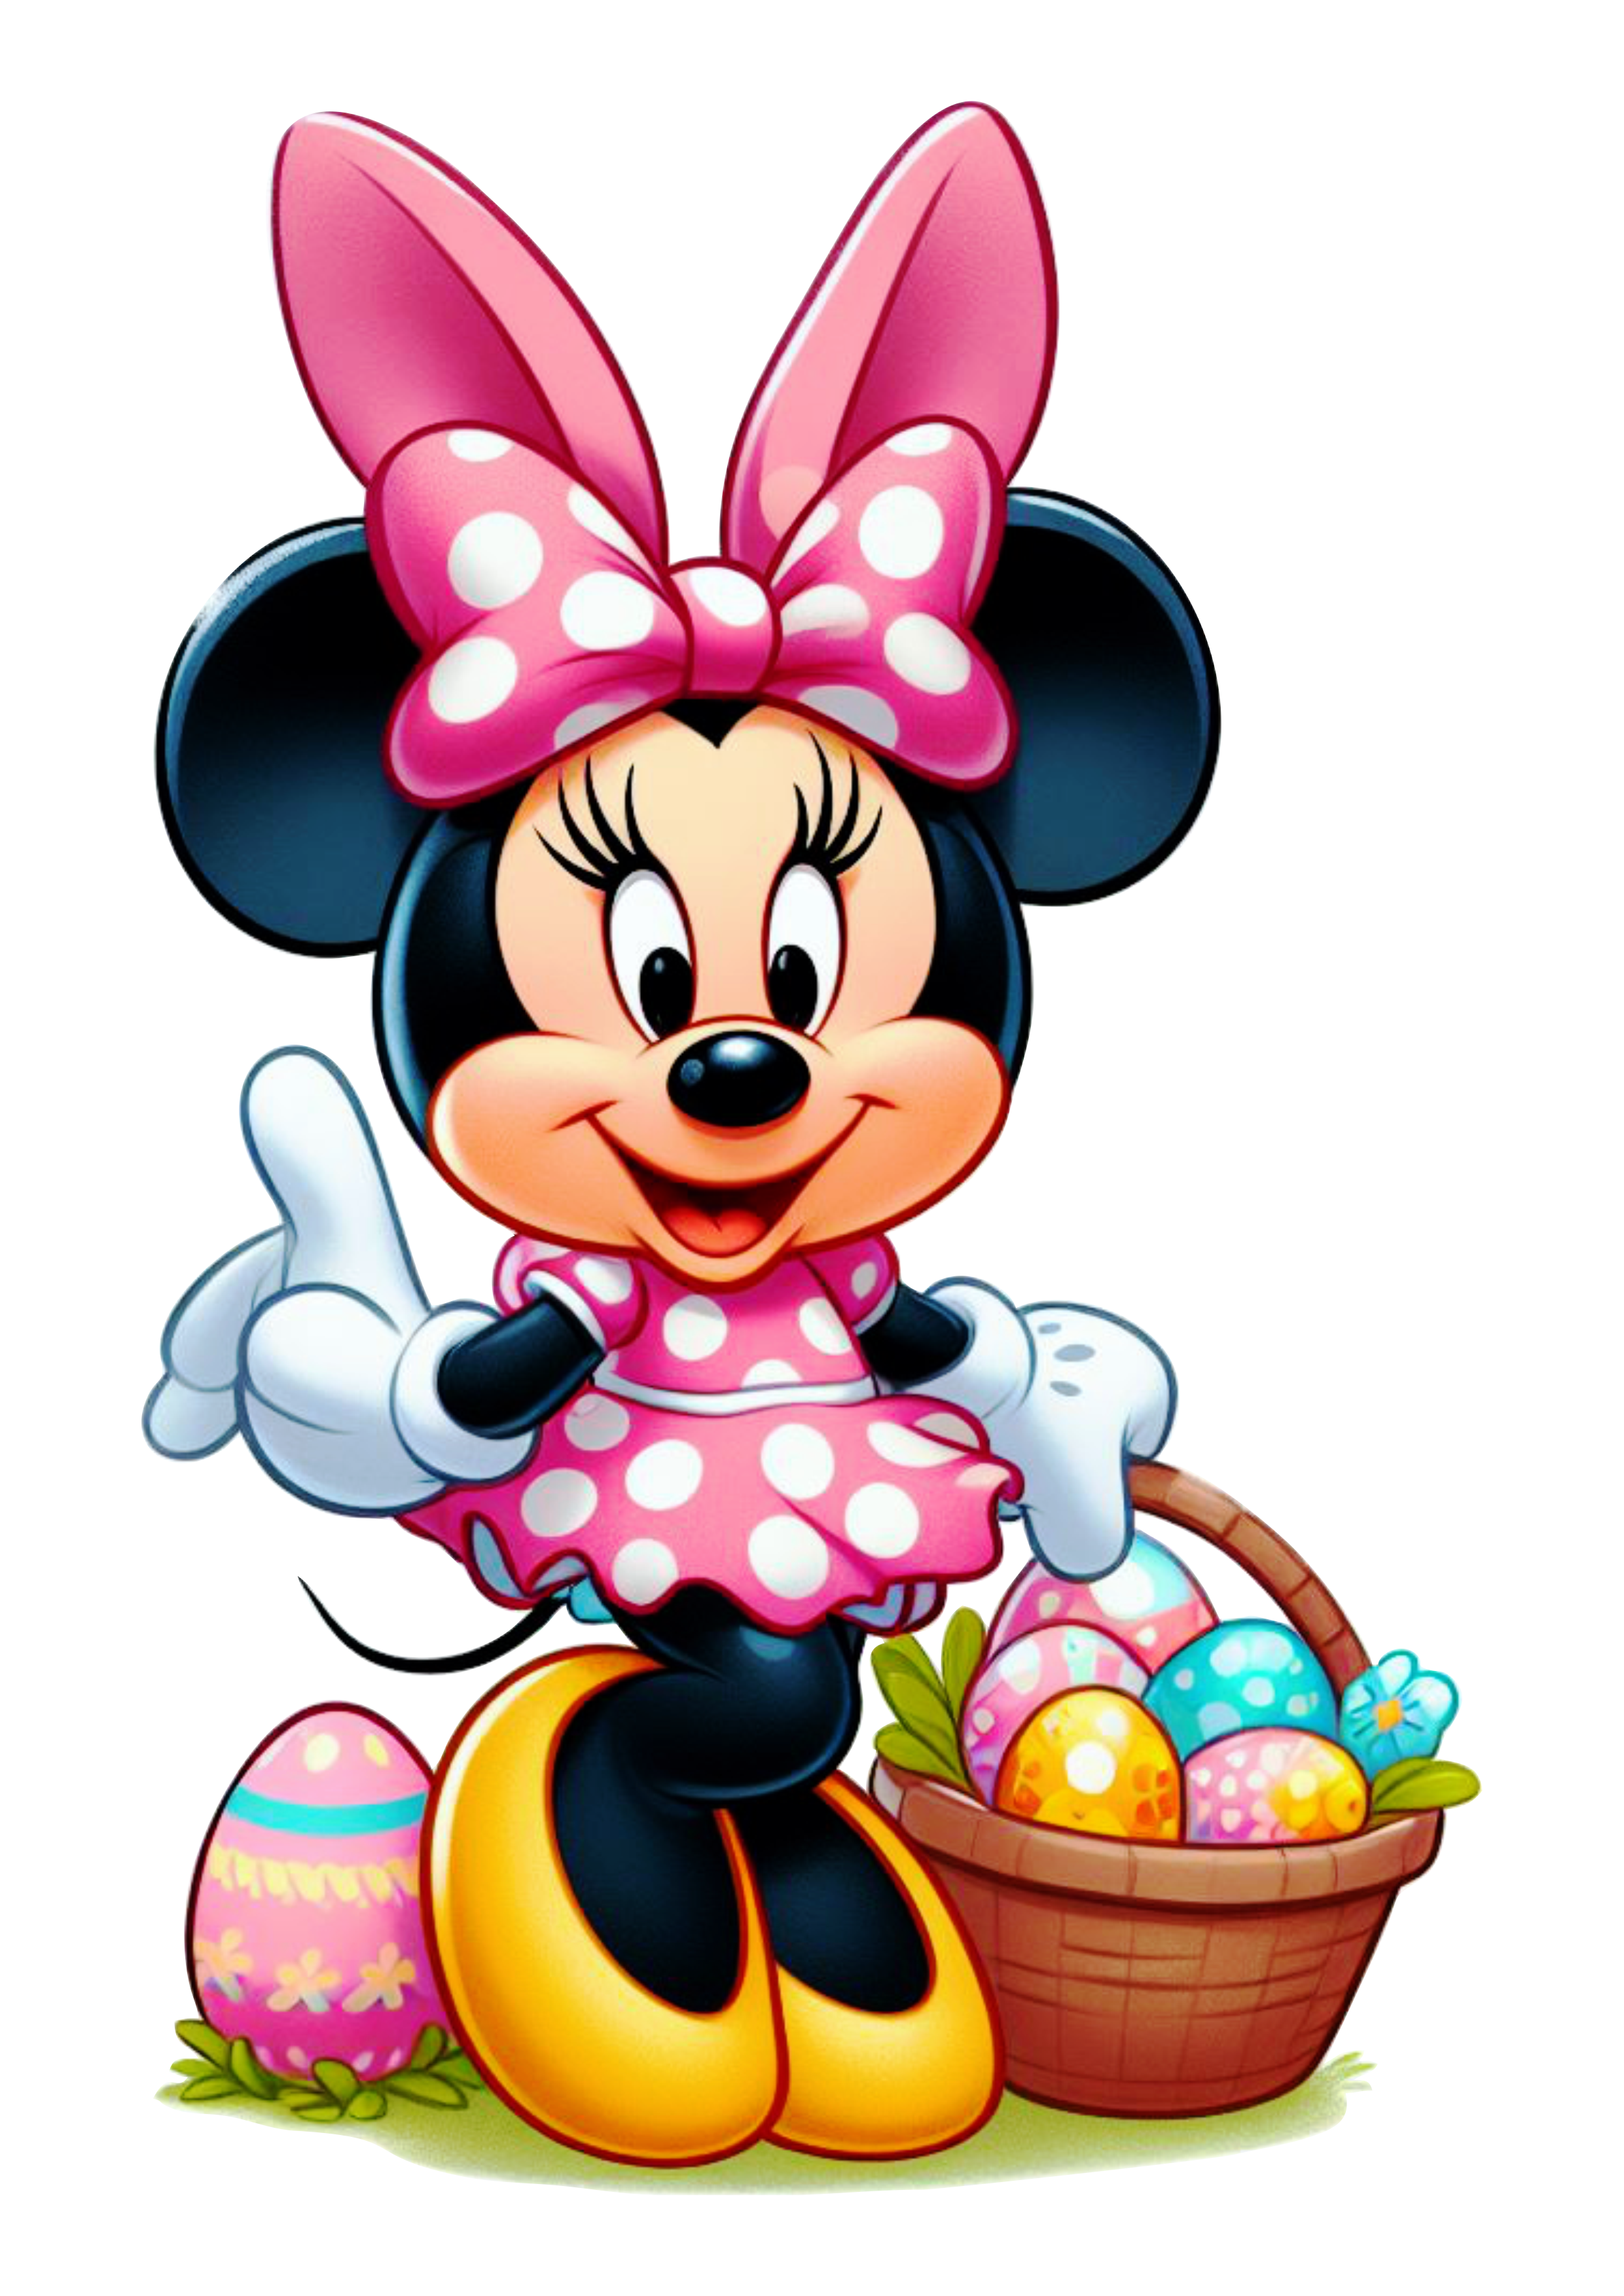 Minnie rosa decoração de páscoa clipart desenho infantil ilustração fundo transparente png image Disney plus Mickey